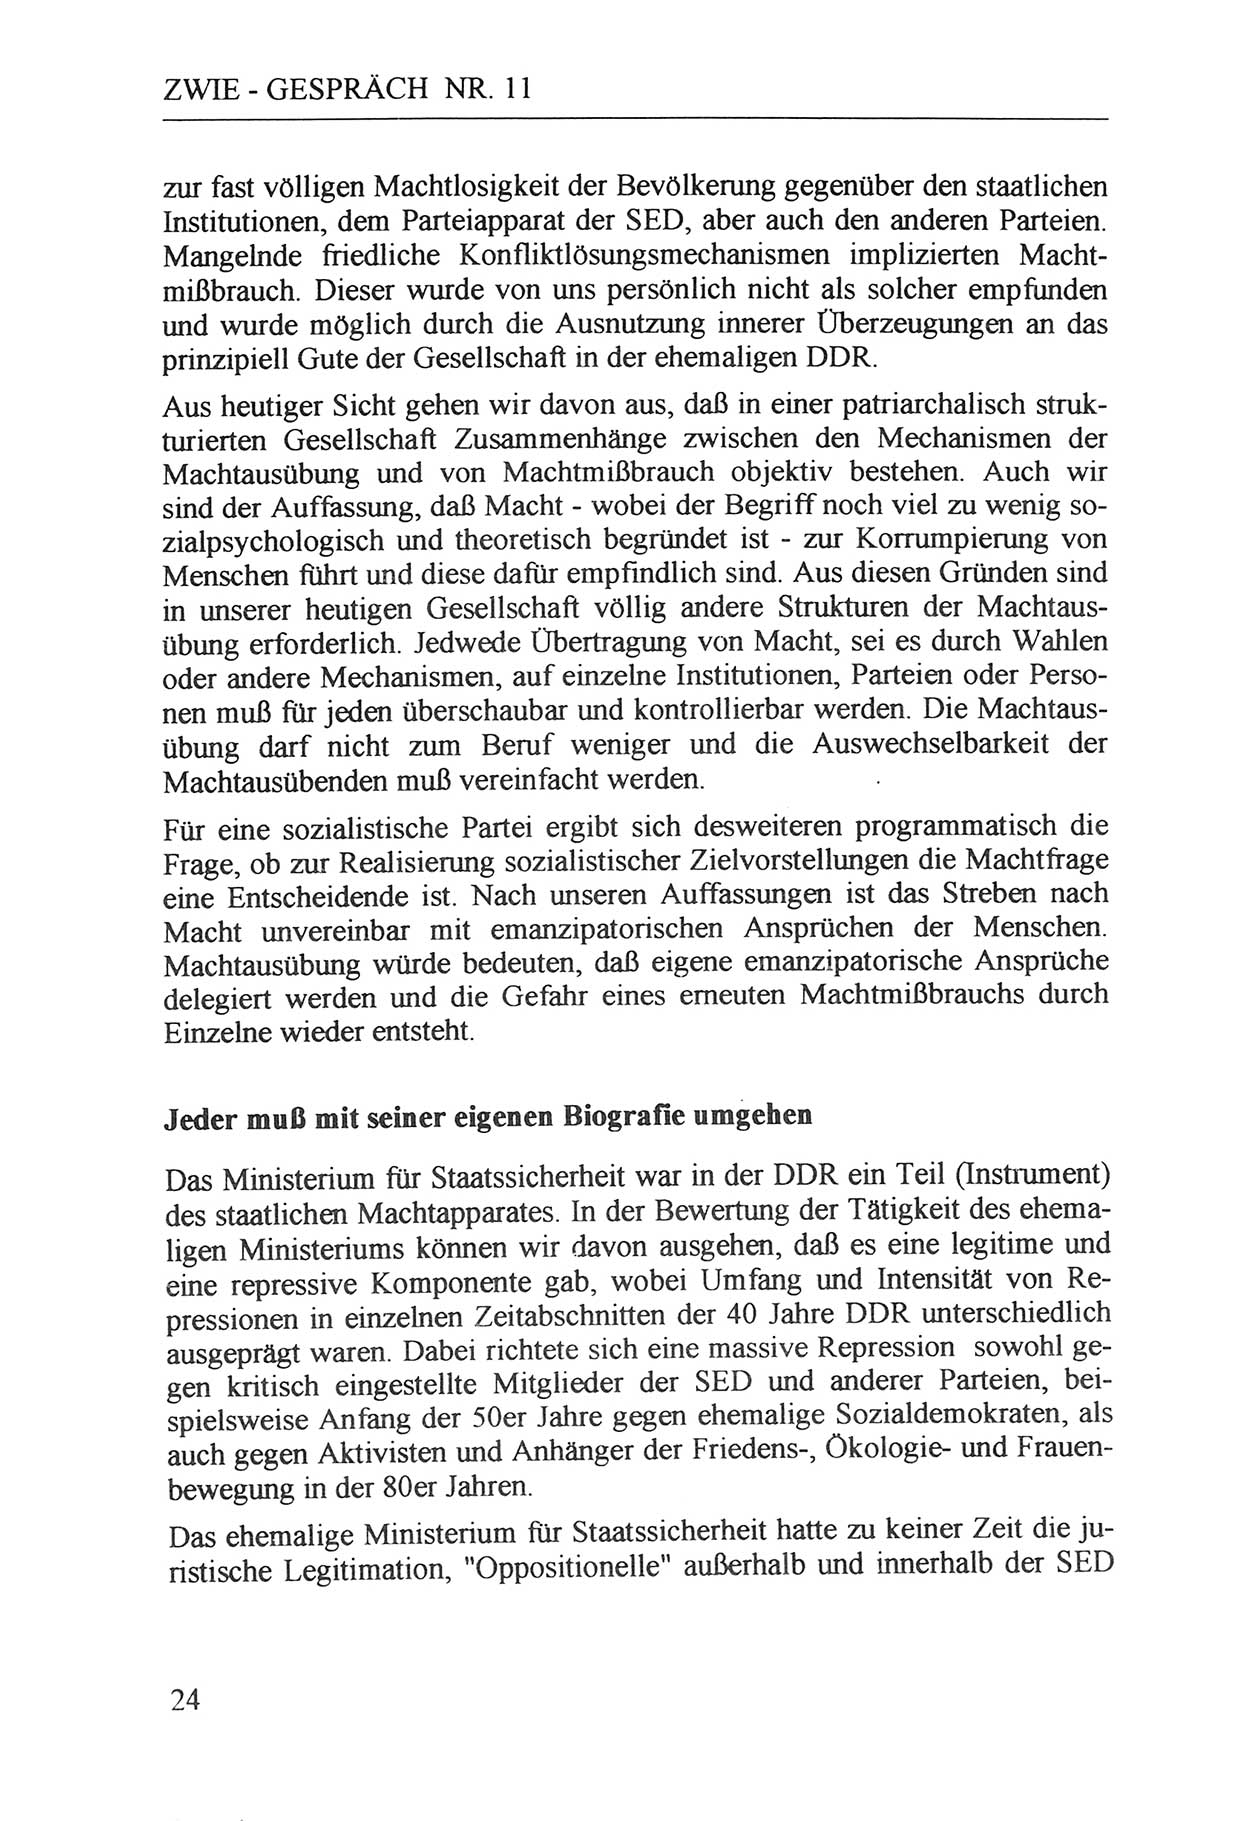 Zwie-Gespräch, Beiträge zur Aufarbeitung der Staatssicherheits-Vergangenheit [Deutsche Demokratische Republik (DDR)], Ausgabe Nr. 11, Berlin 1992, Seite 24 (Zwie-Gespr. Ausg. 11 1992, S. 24)